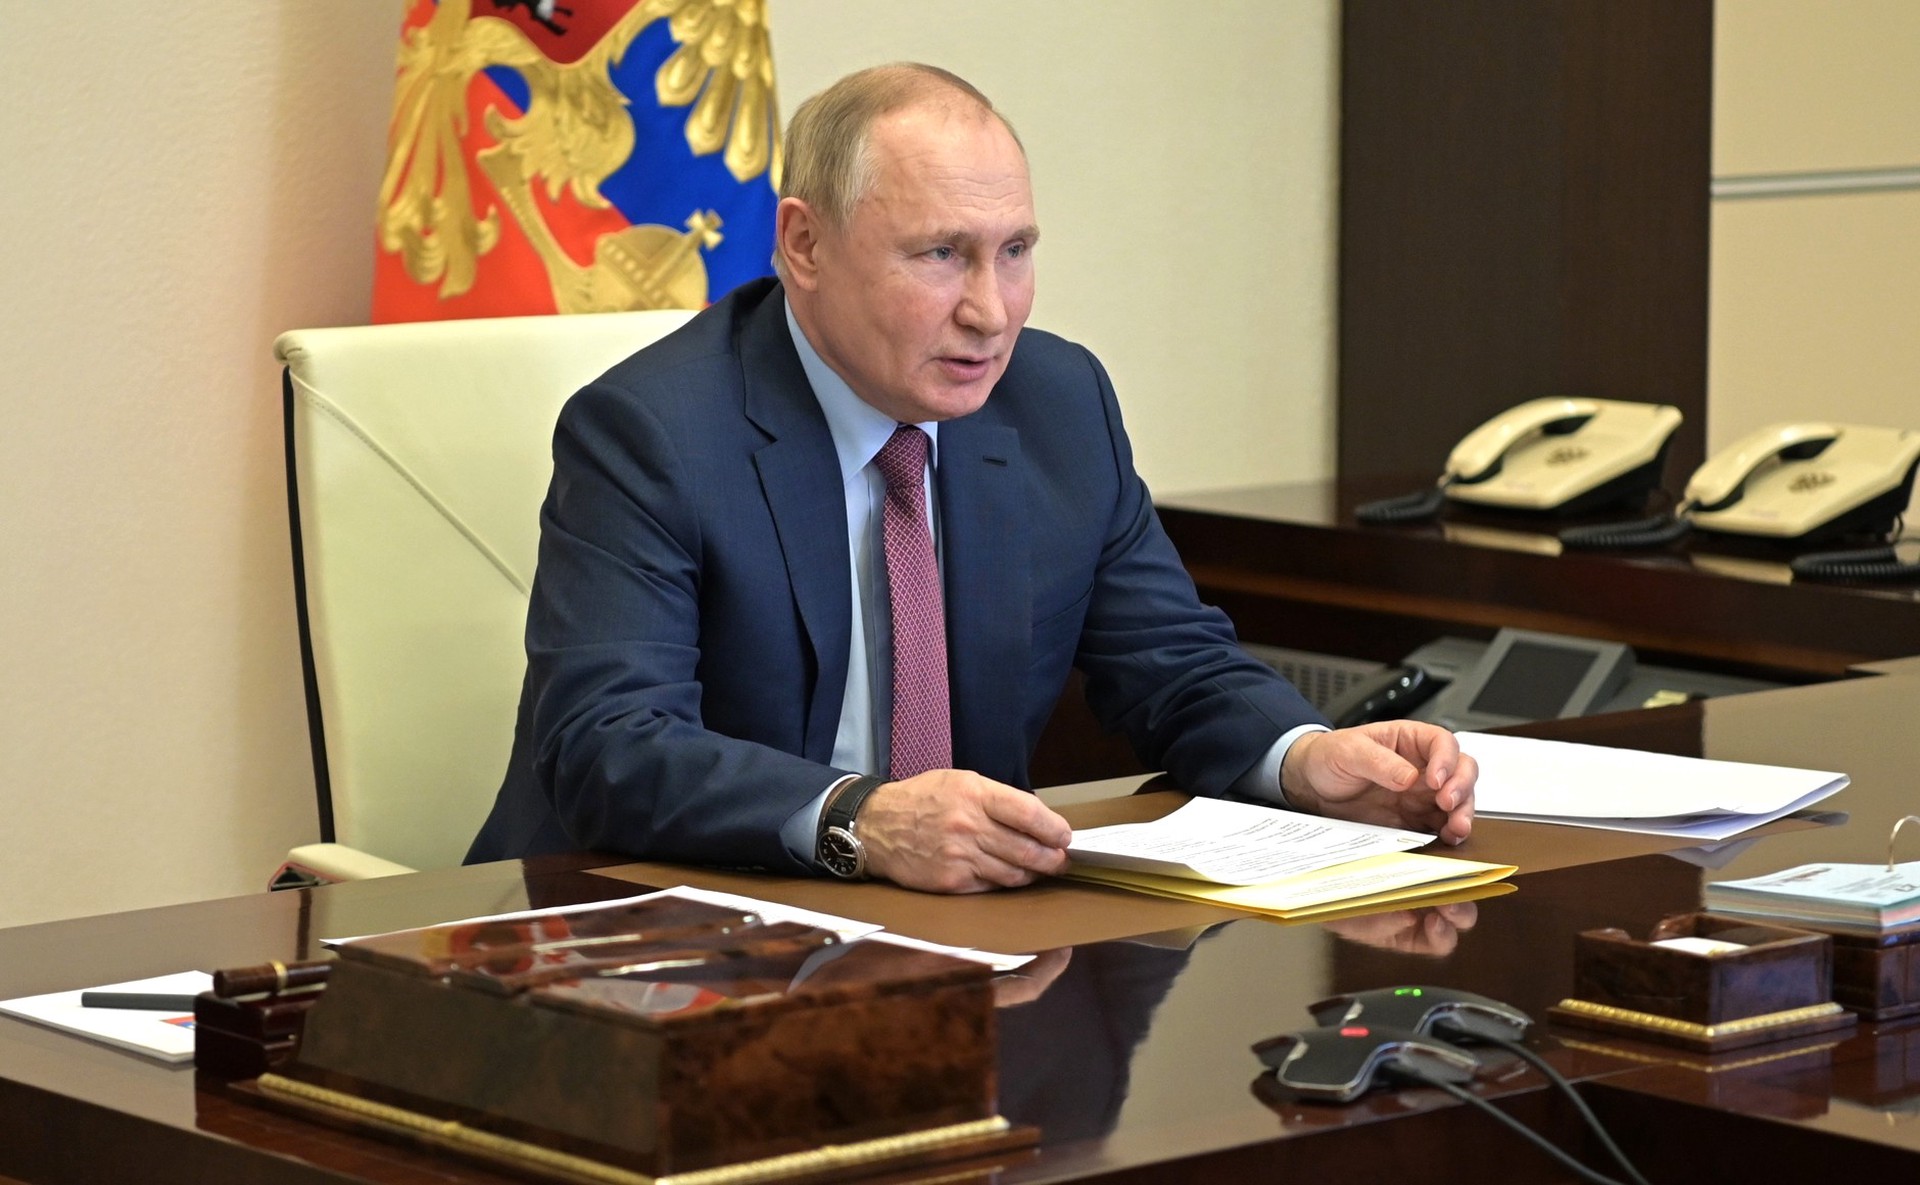 Путин: Экономическая ситуация в стране развивается предсказуемо, в соответствии с прогнозом